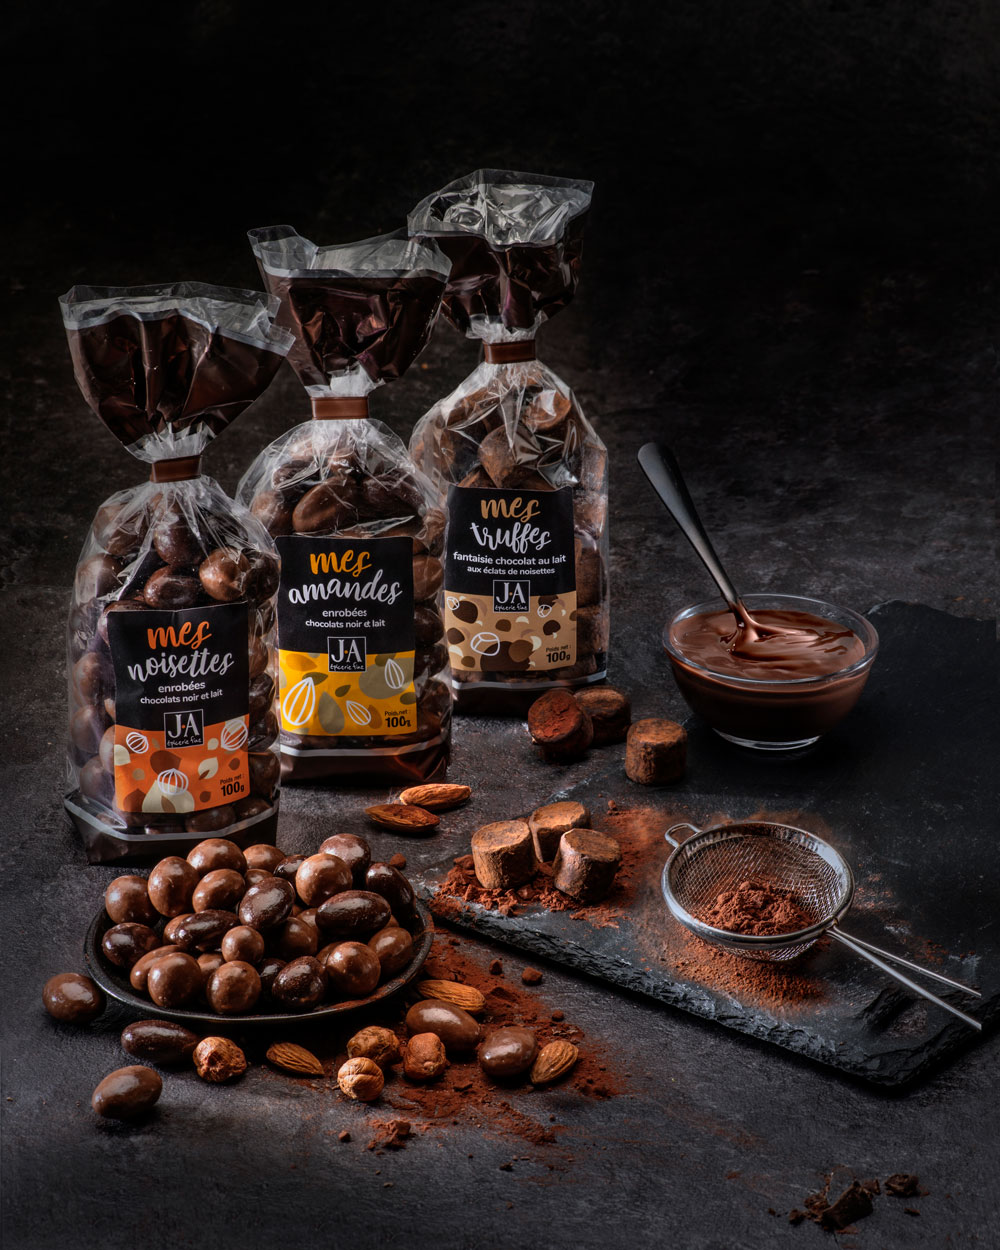 Grossiste chocolat pour professionnel : SDP Rungis, spécialiste vente en  gros